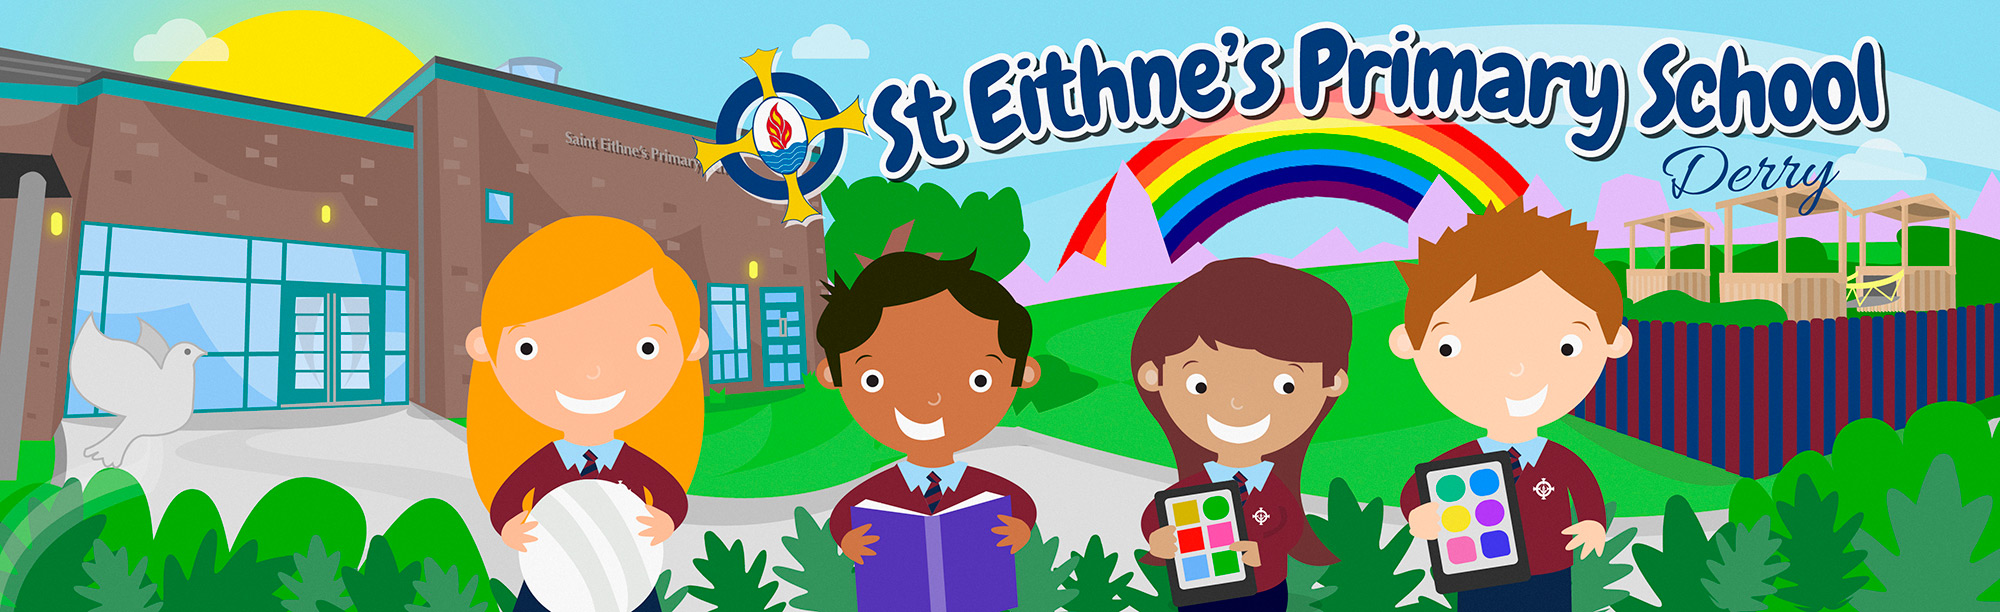 St. Eithne's Primary School, Derry